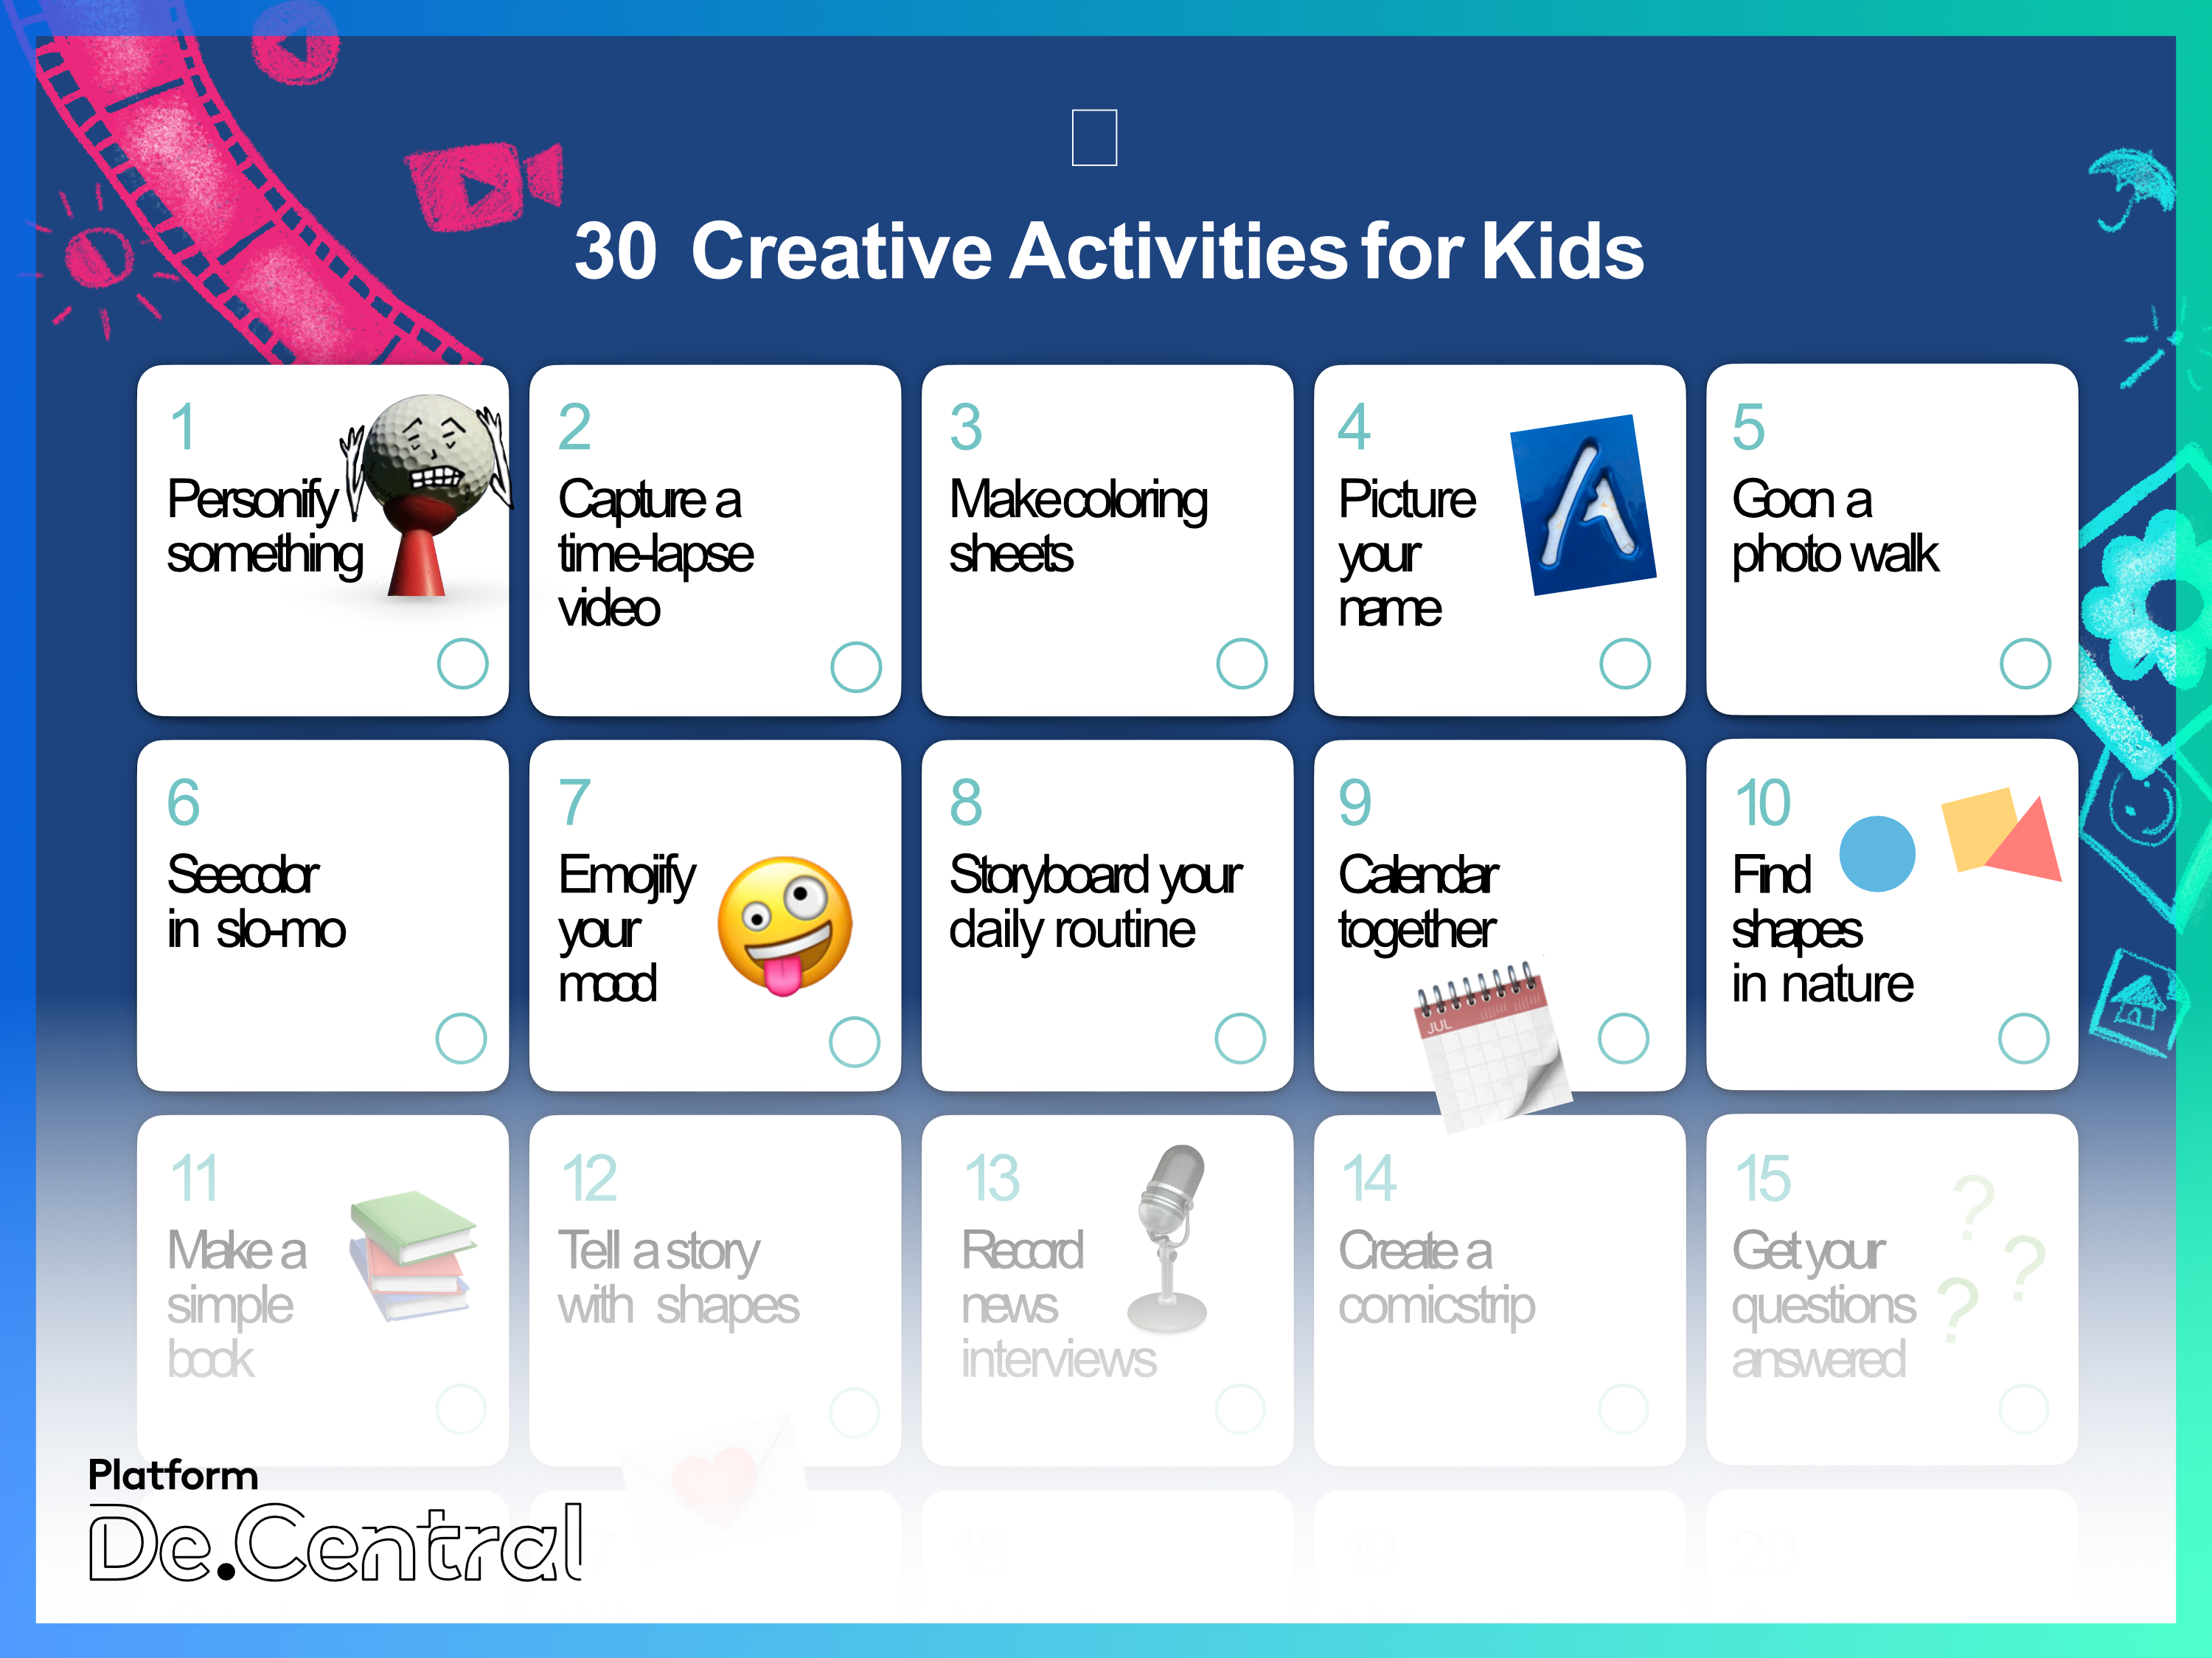 Apple’s ’30 Creative Activities for Kids’